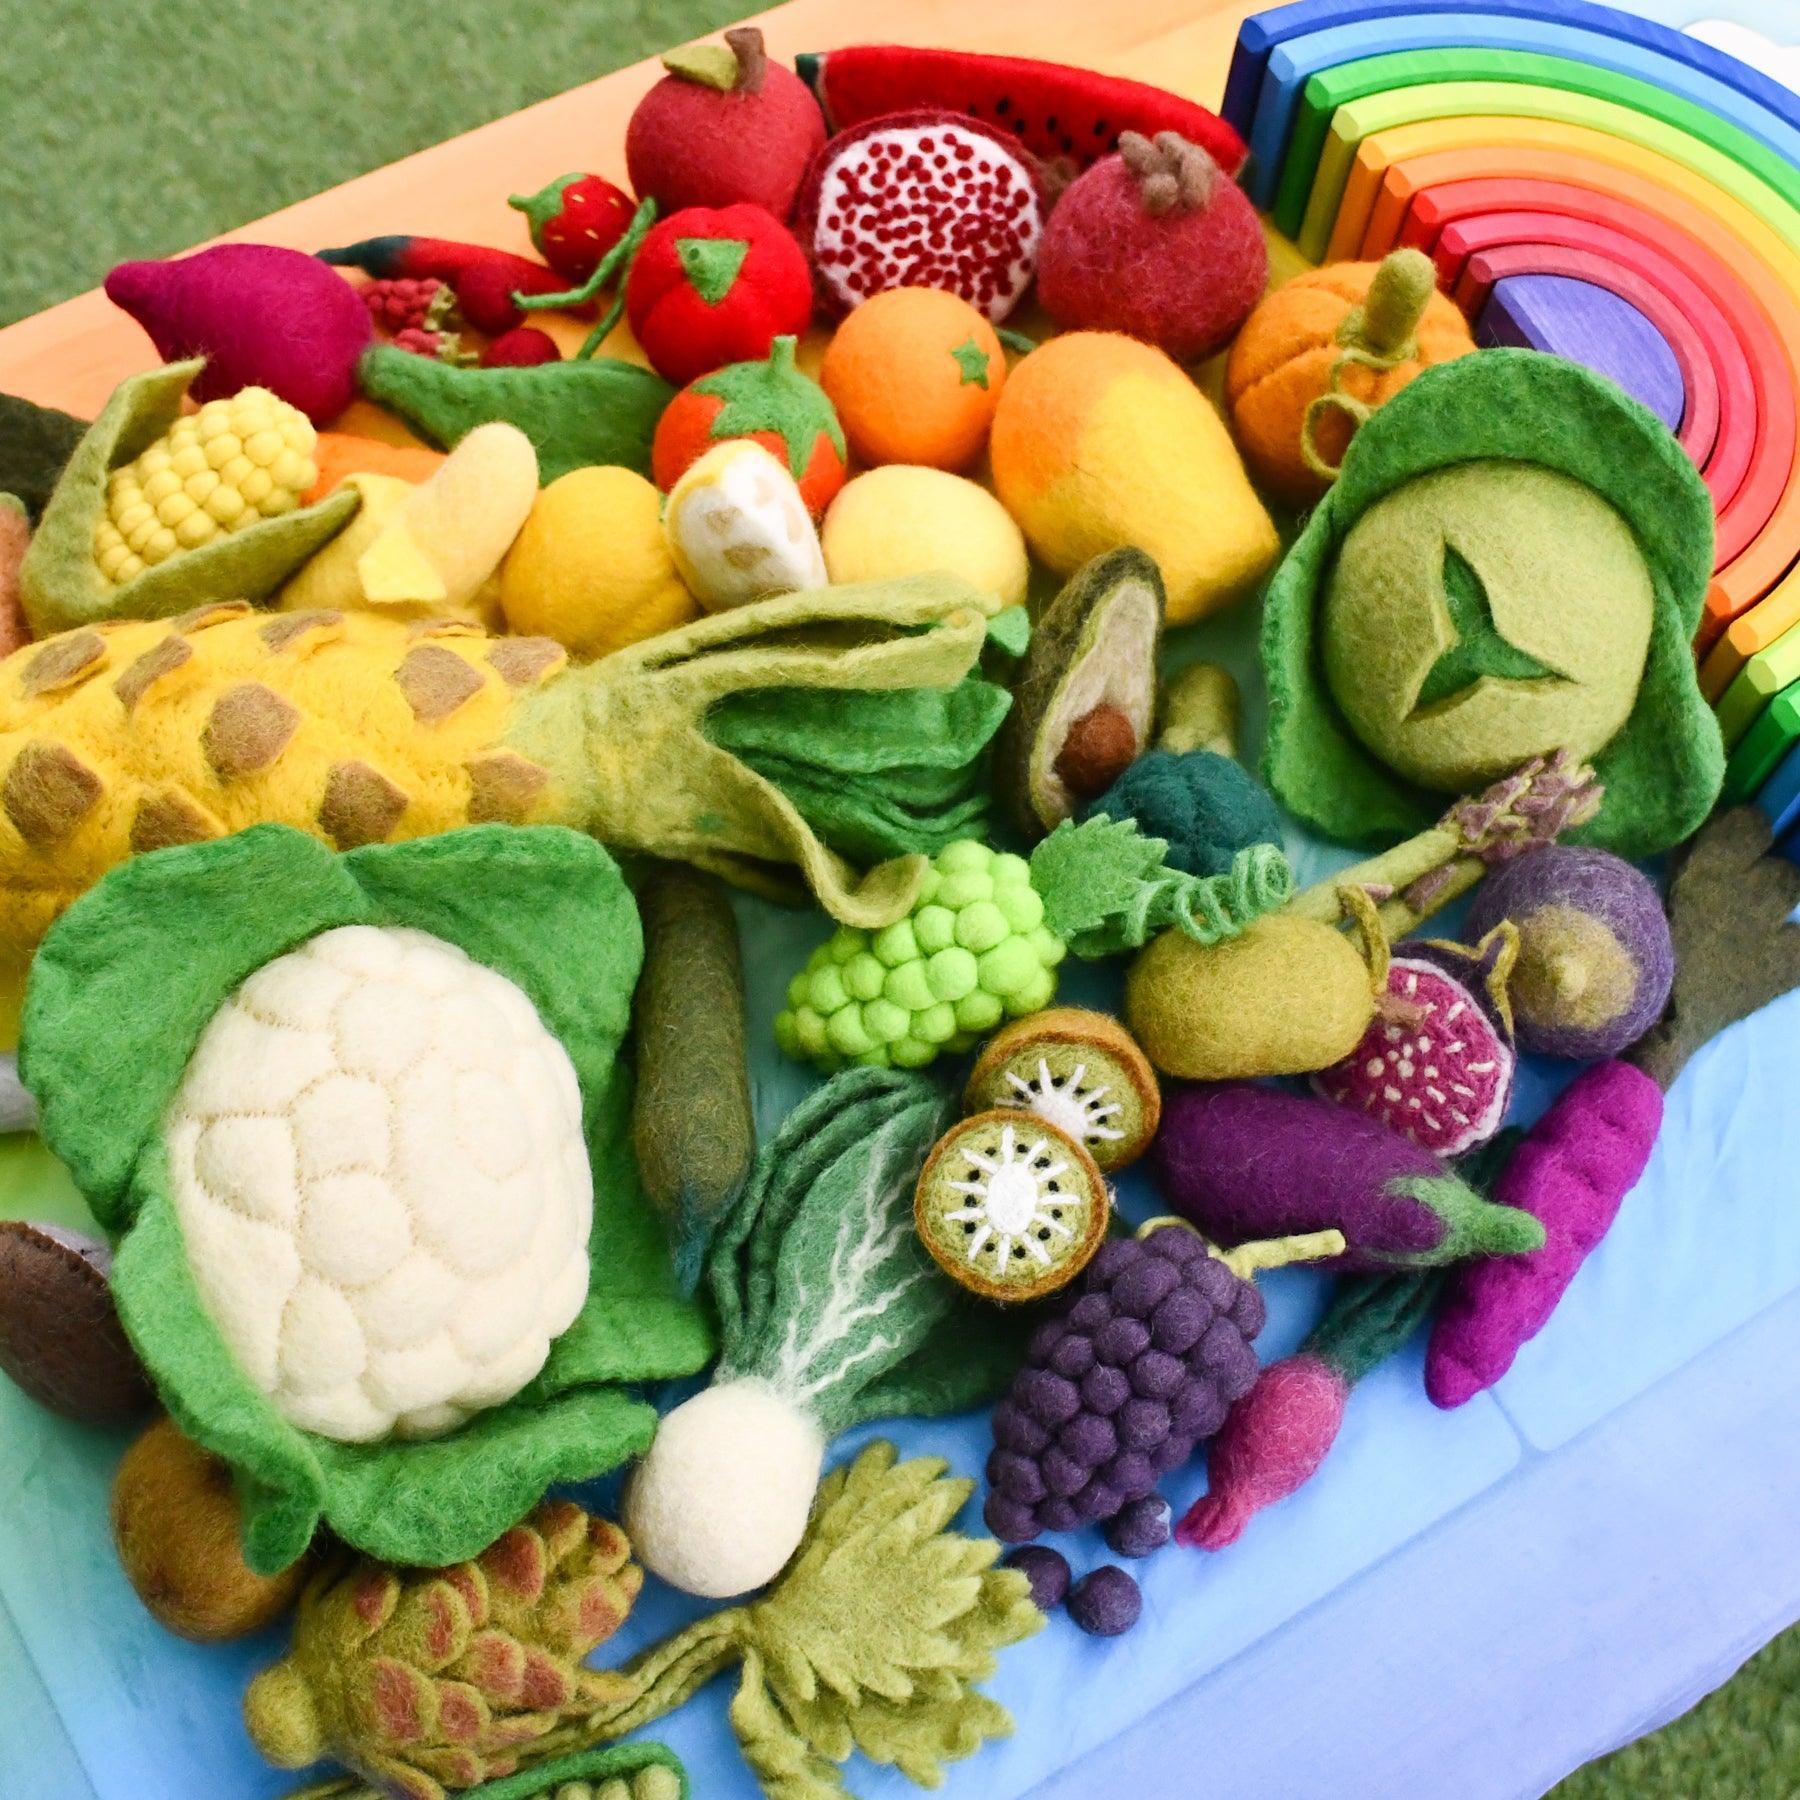 Felt Vegetables and Fruits Set A - 14 pieces - Tara Treasures